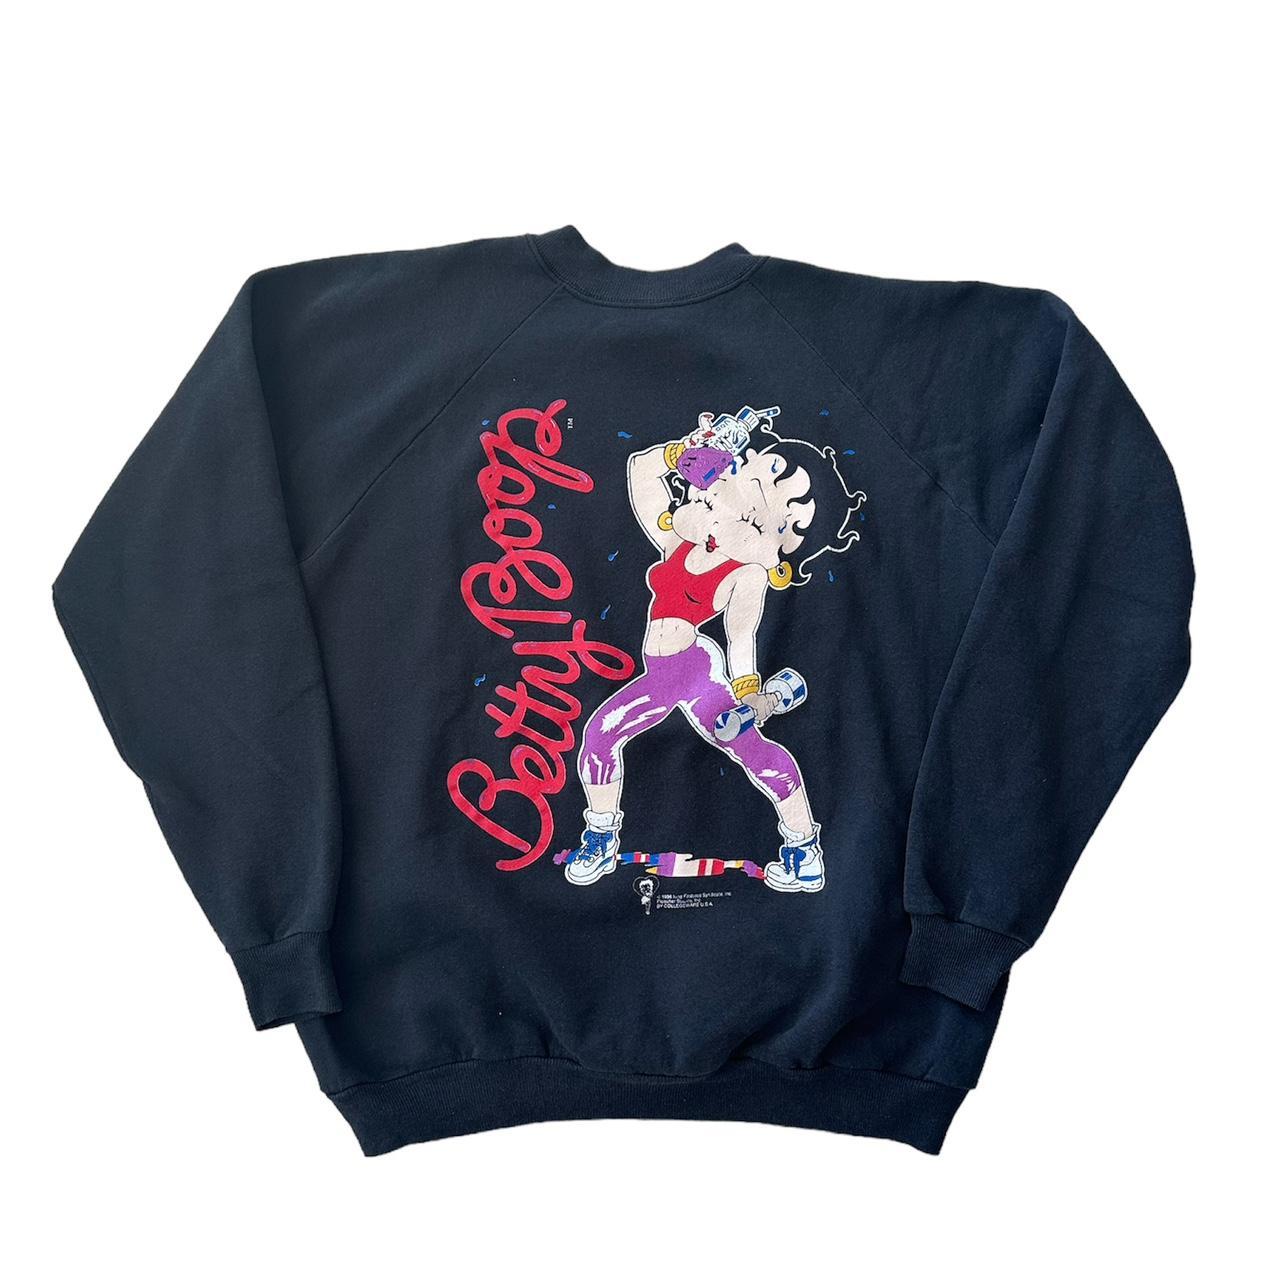 Vintage 90s Betty Boop cute sweatshirt Great... - Depop